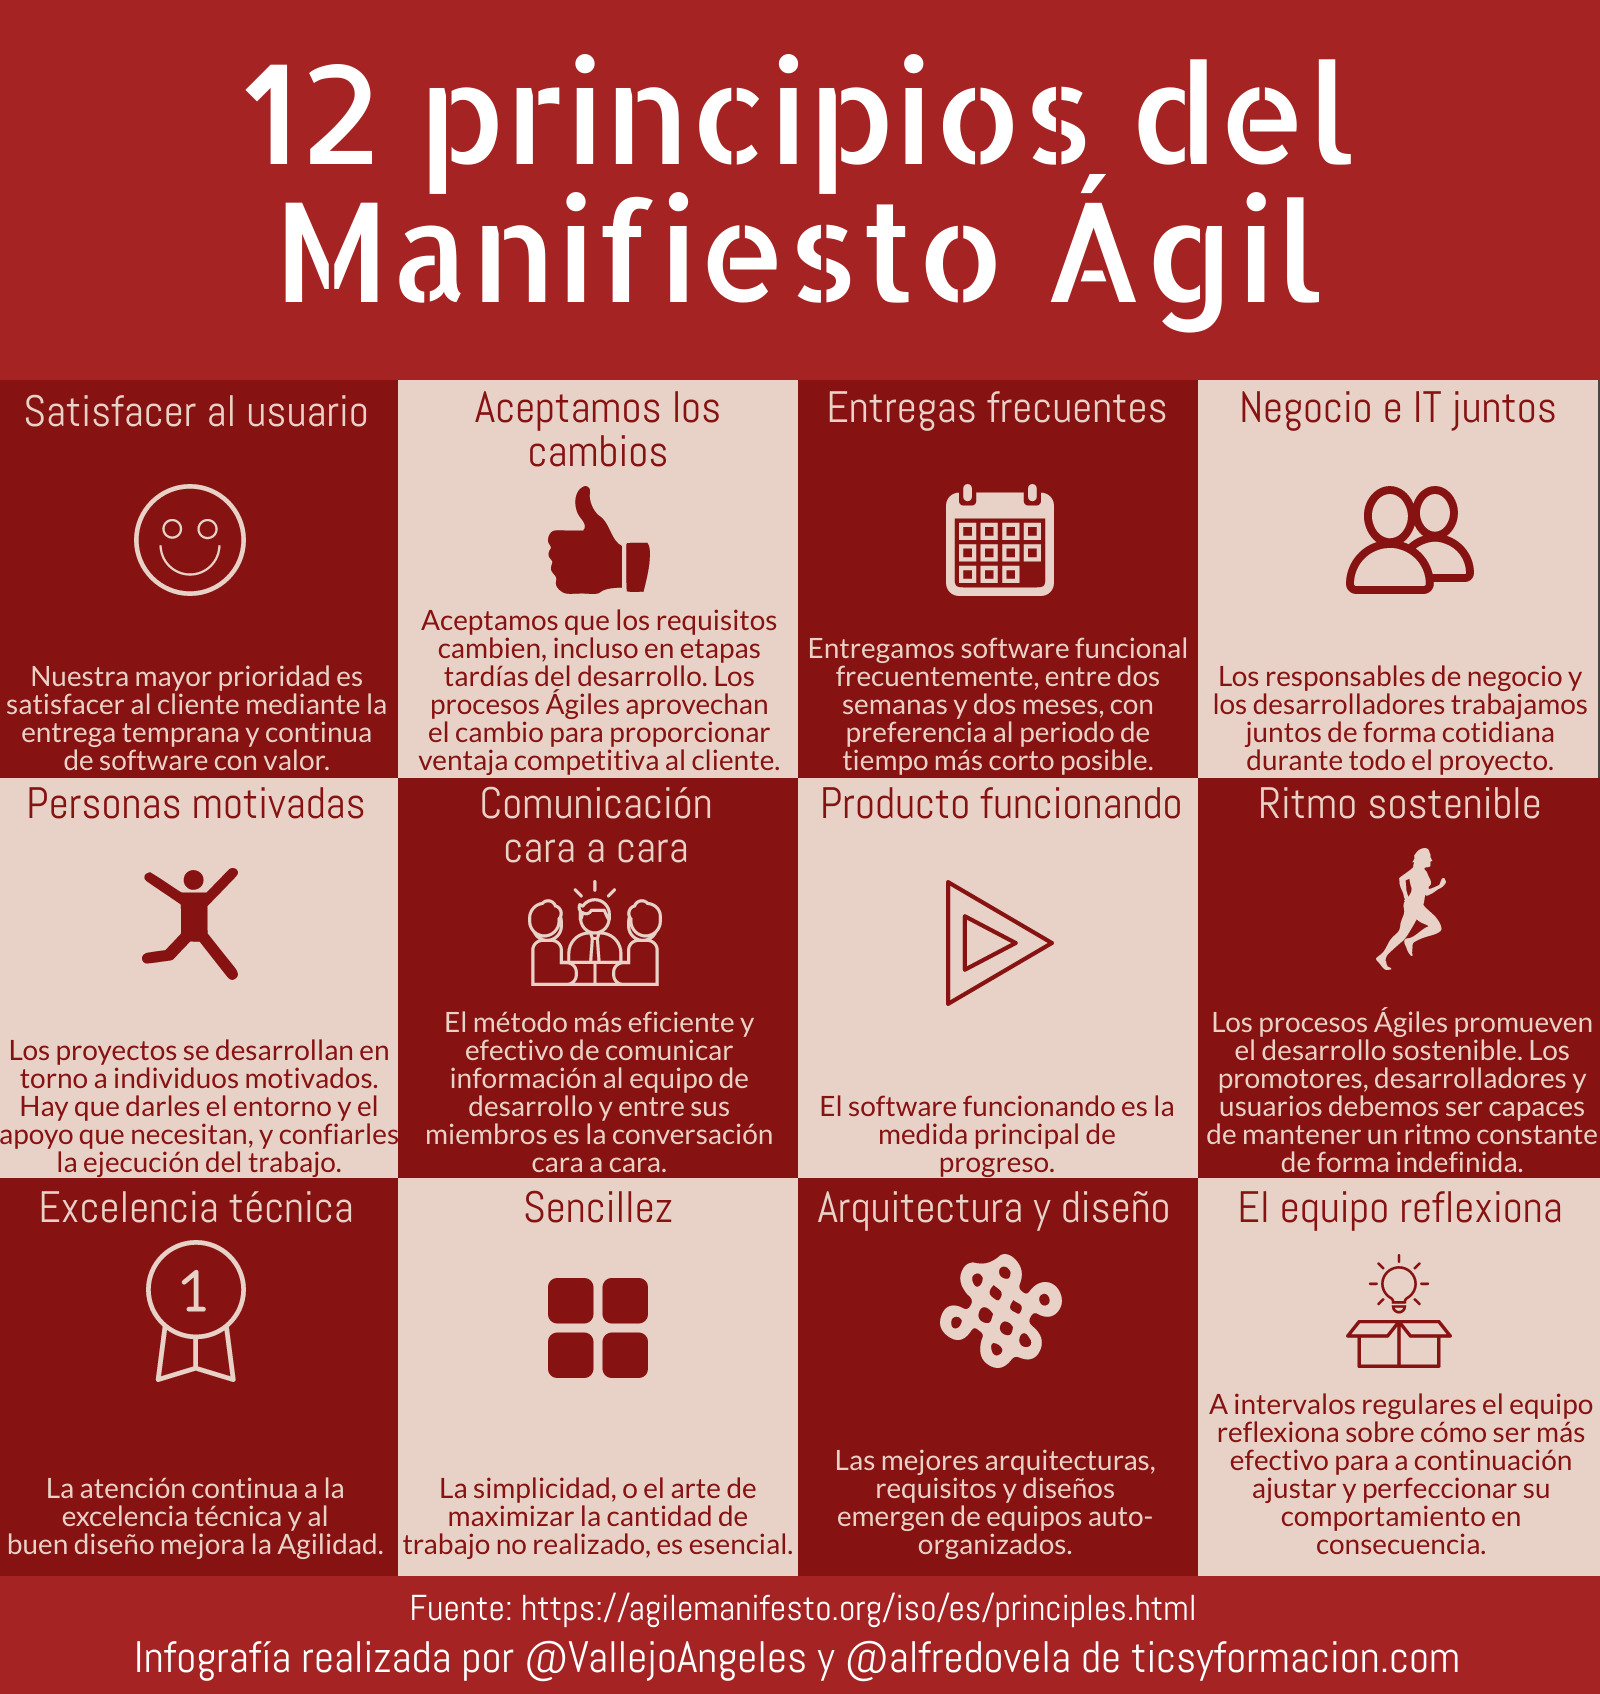 12 principios del Manifiesto Ágil #infografia #infographic #metodologíasÁgiles